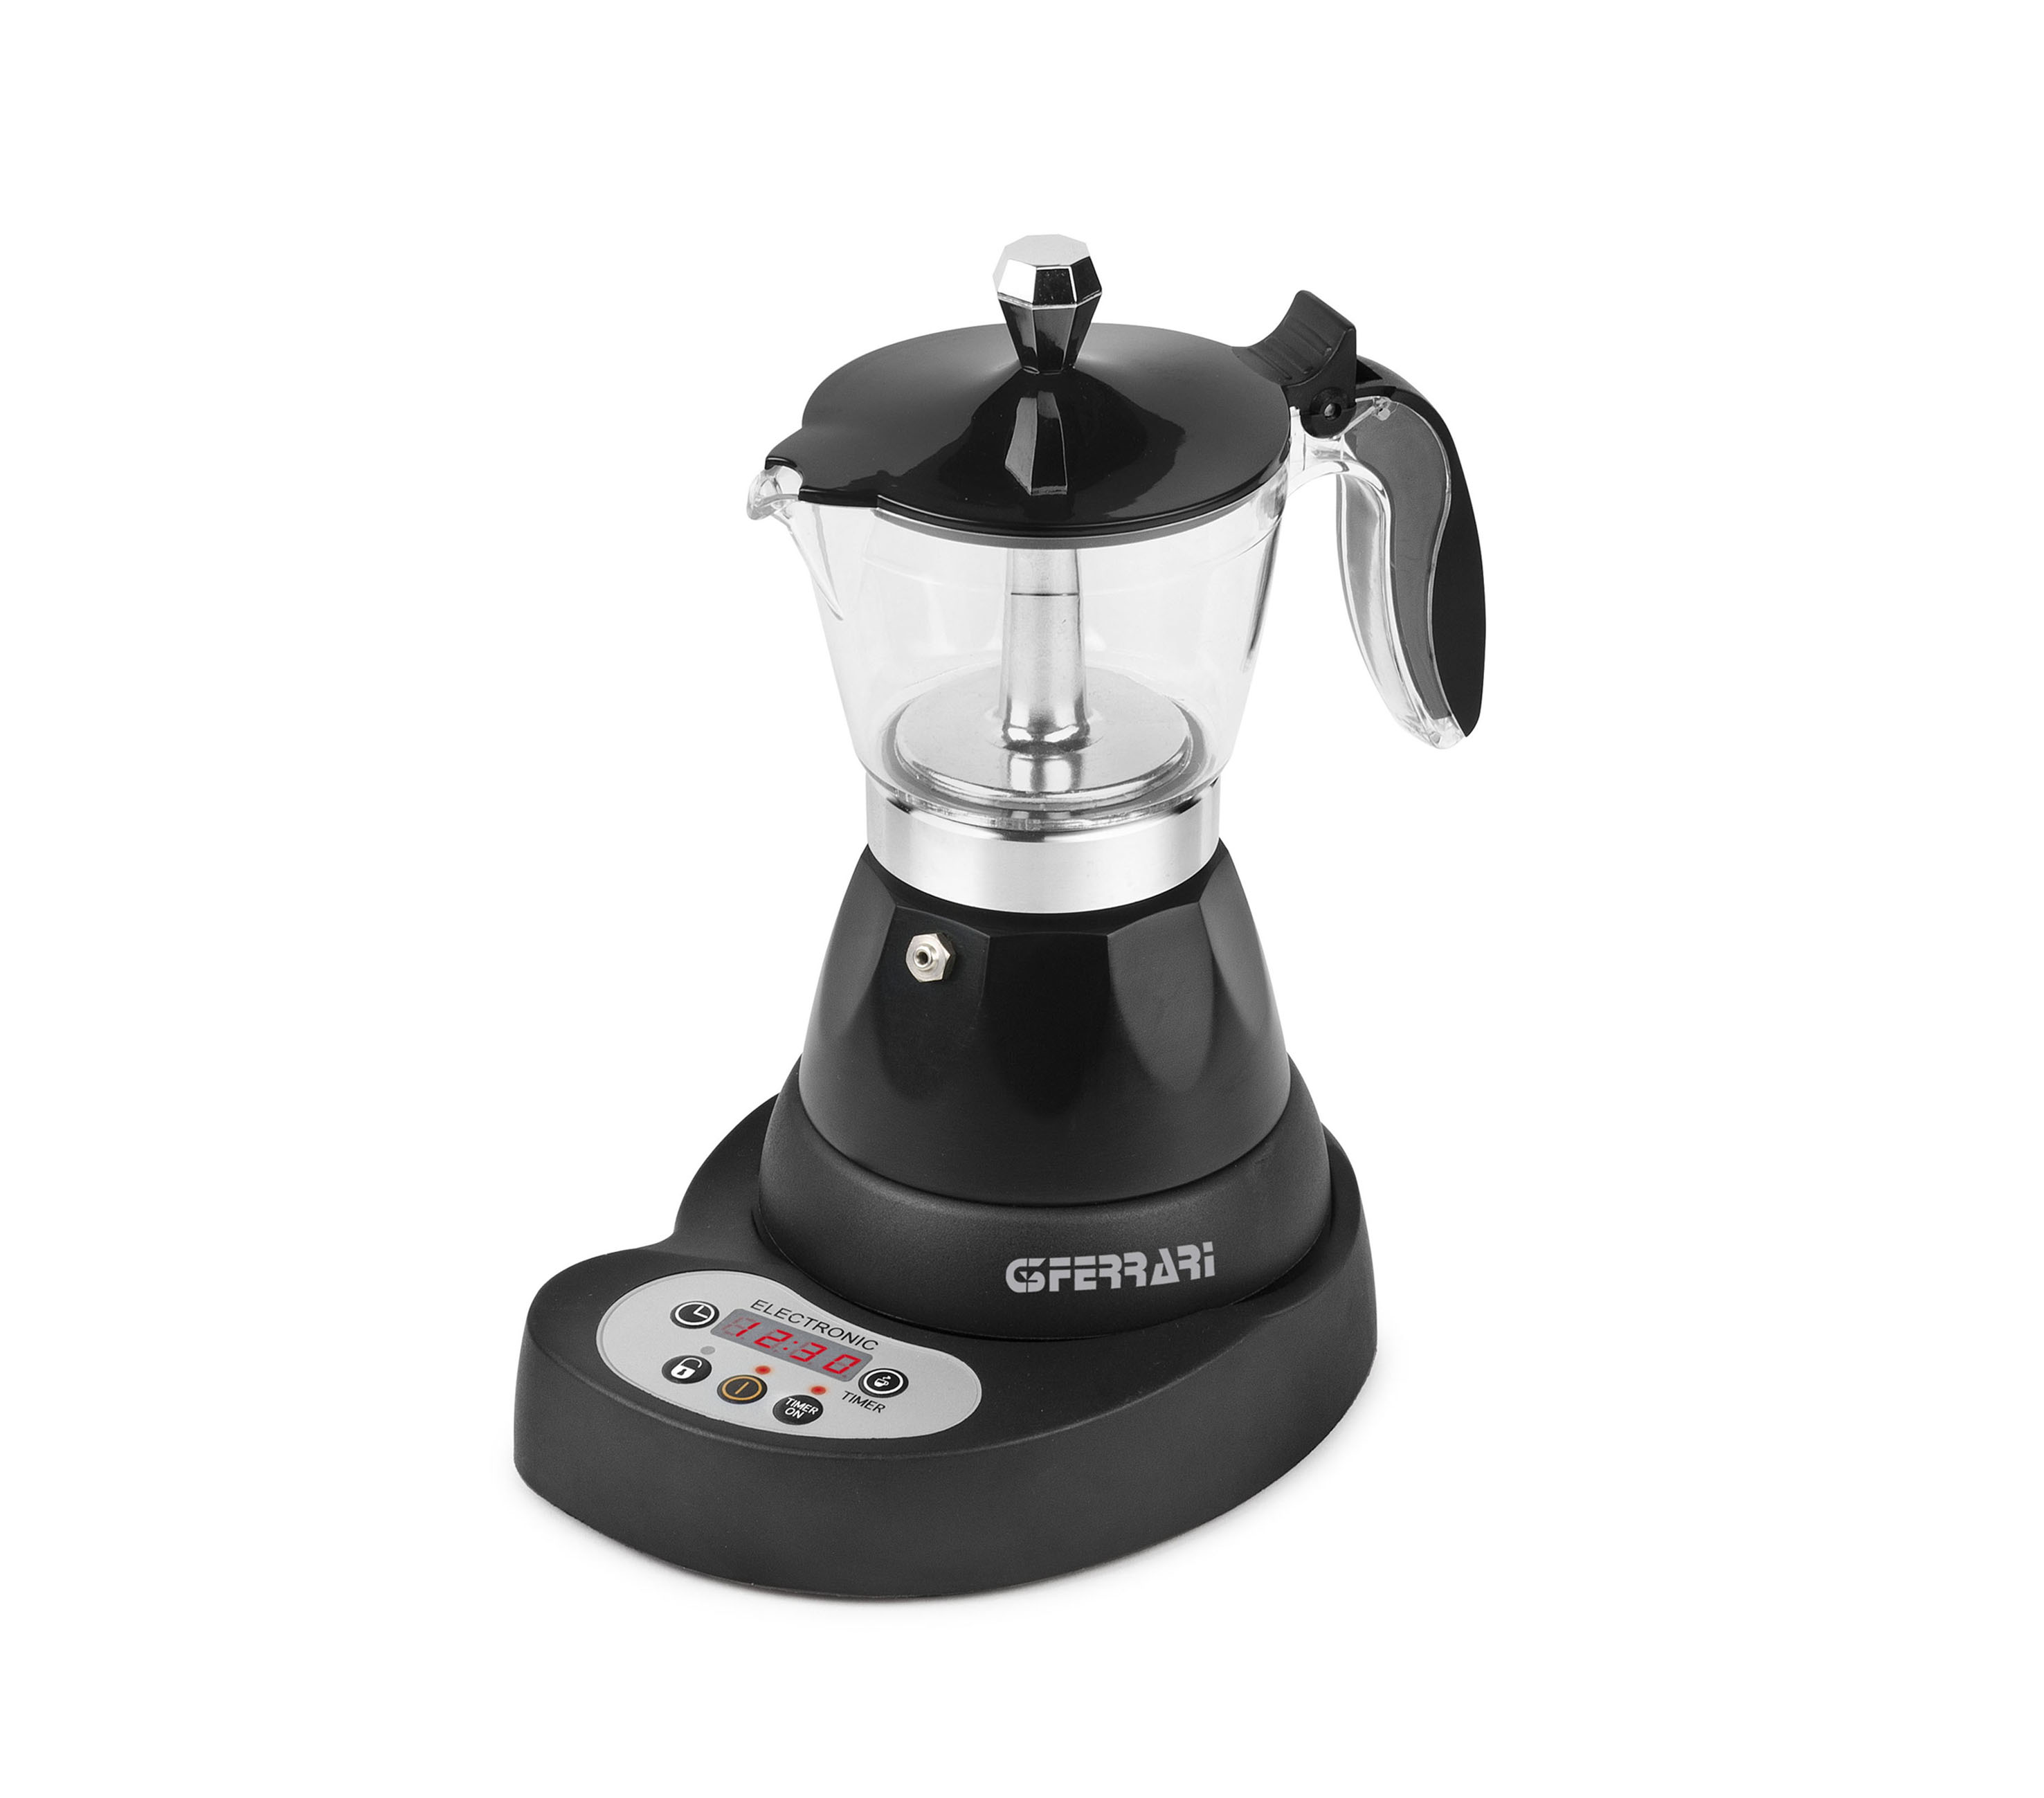 G1004500, Risveglio Espresso, Italian coffee maker, timer, black